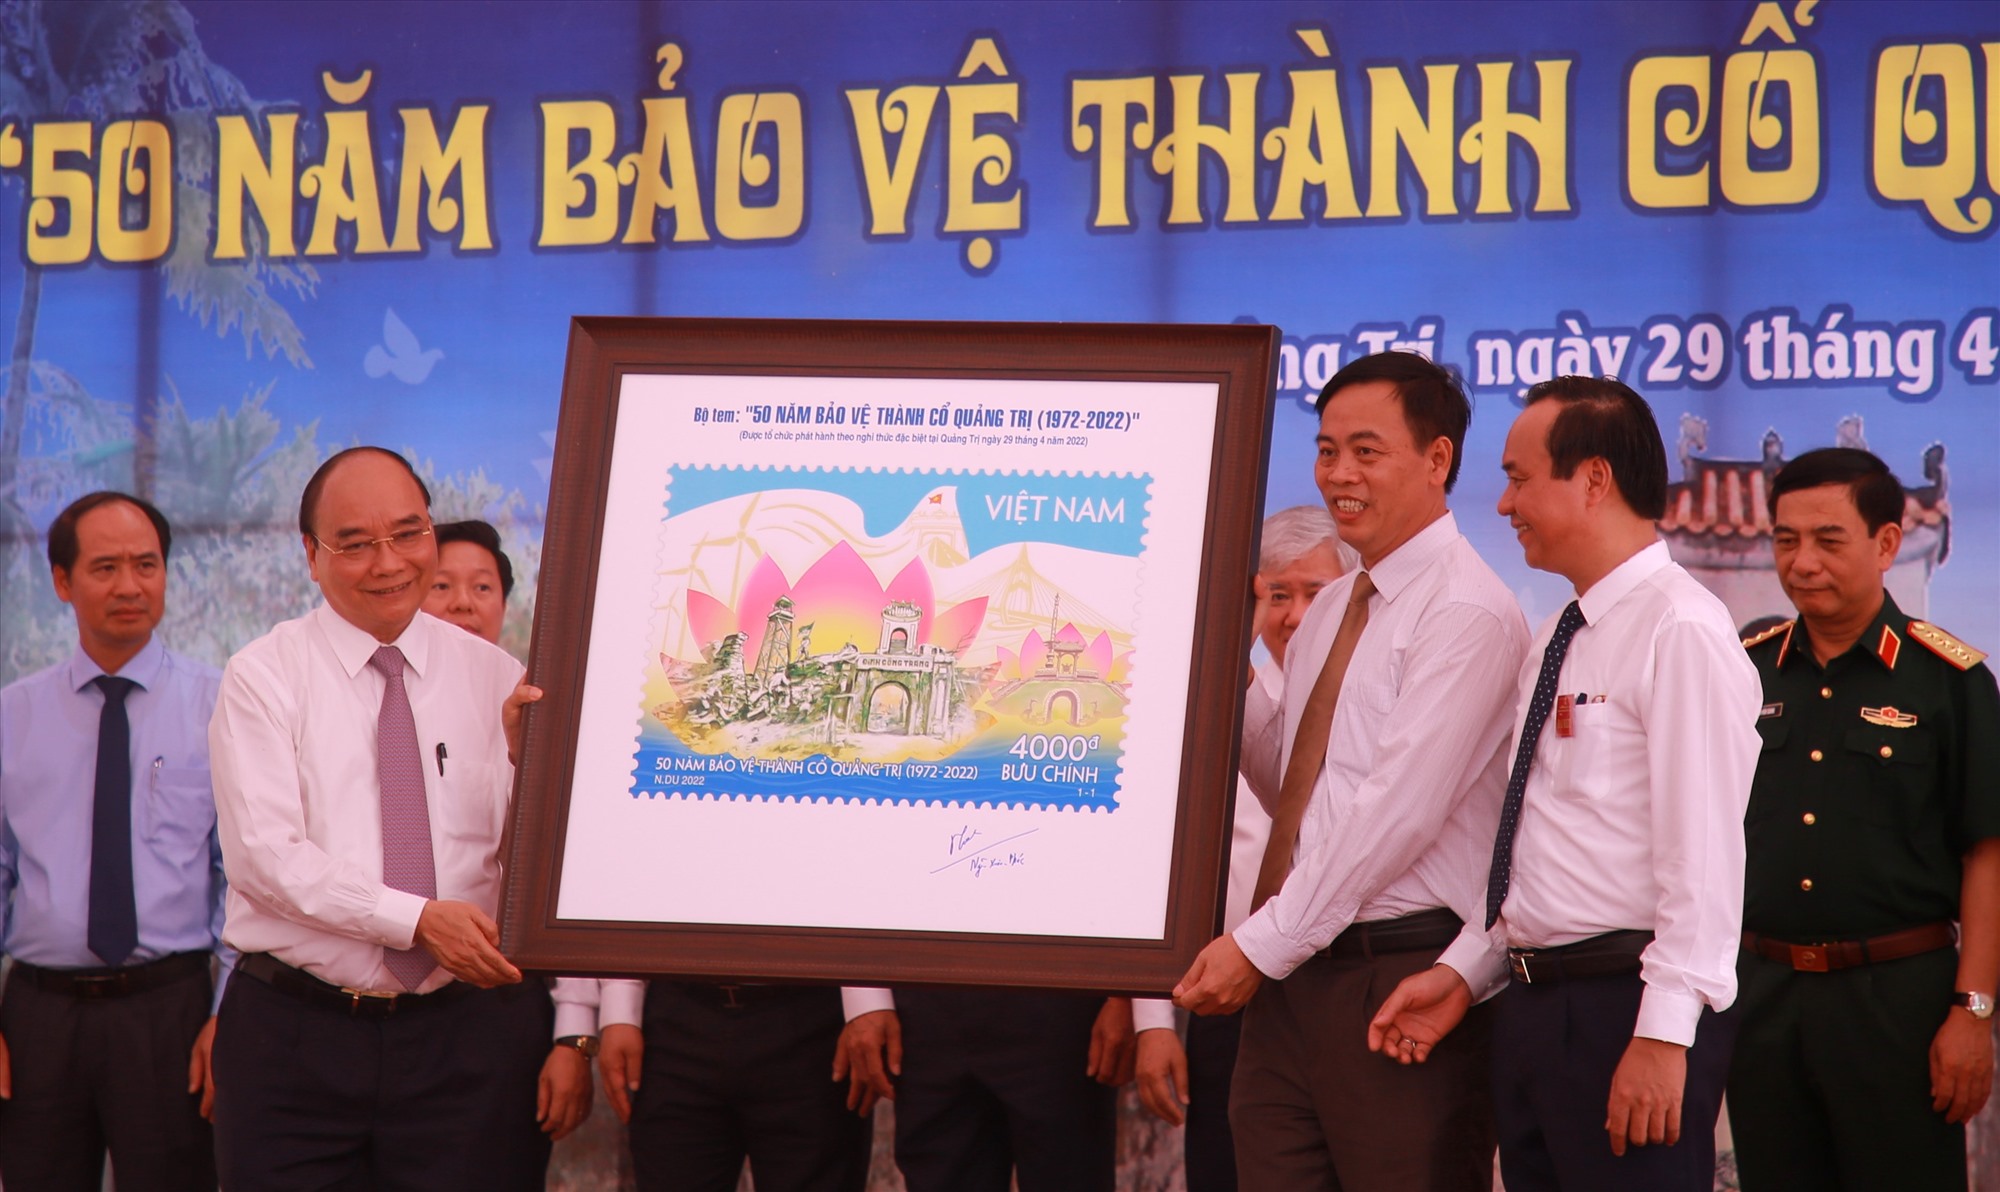 Chủ tịch nước Nguyễn Xuân Phúc tặng bộ tem “50 năm bảo vệ Thành Cổ Quảng Trị (1972 – 2022)” cho lãnh đạo tỉnh Quảng Trị - Ảnh: T.P